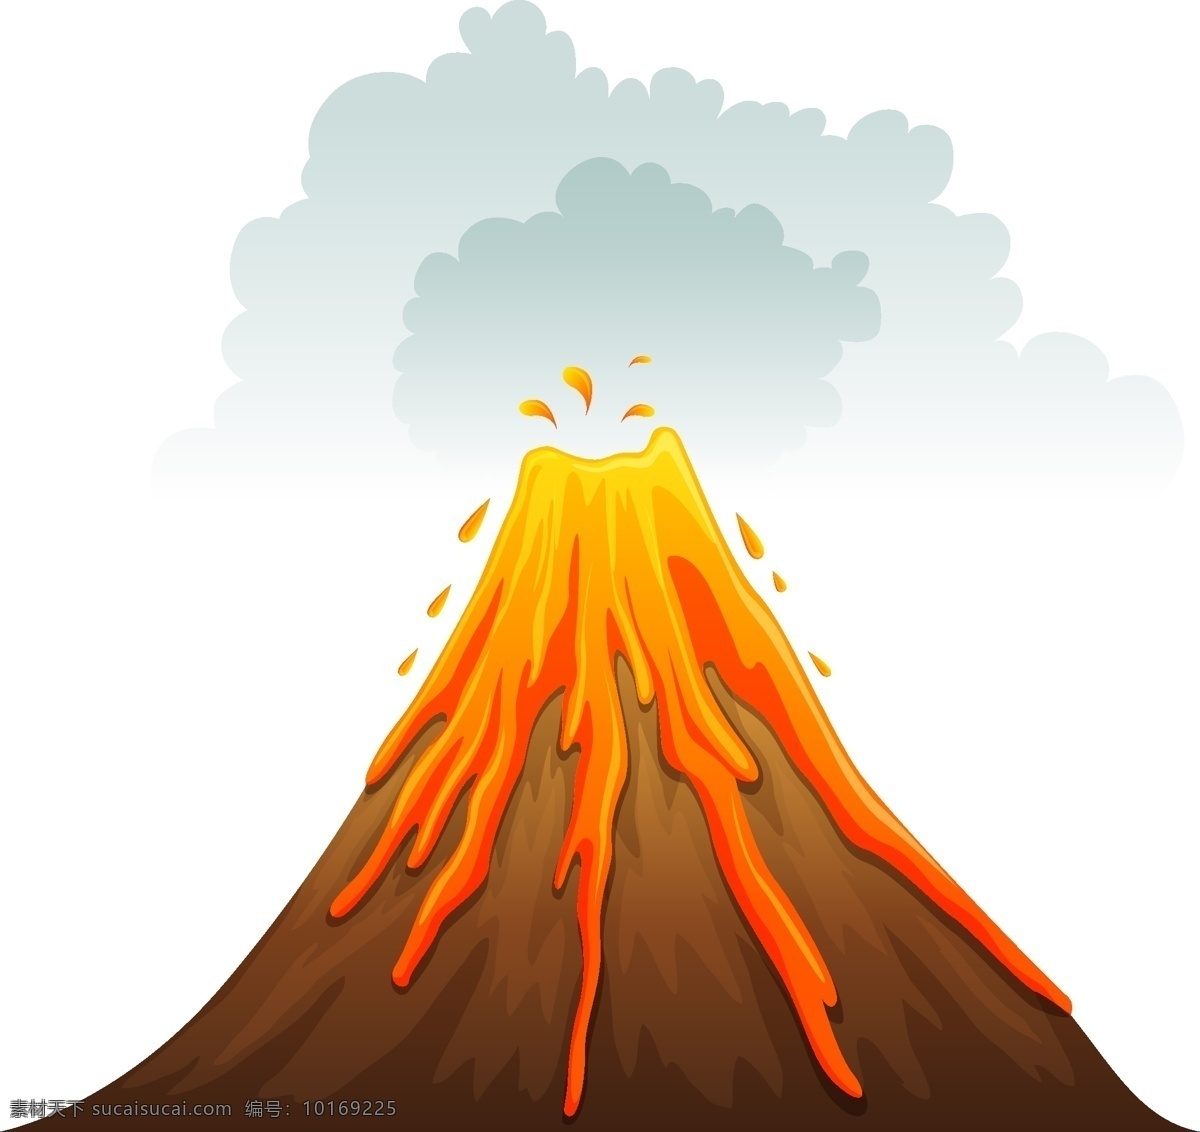 火山 爆发 矢量 矢量图 格式 psd素材 高清图片